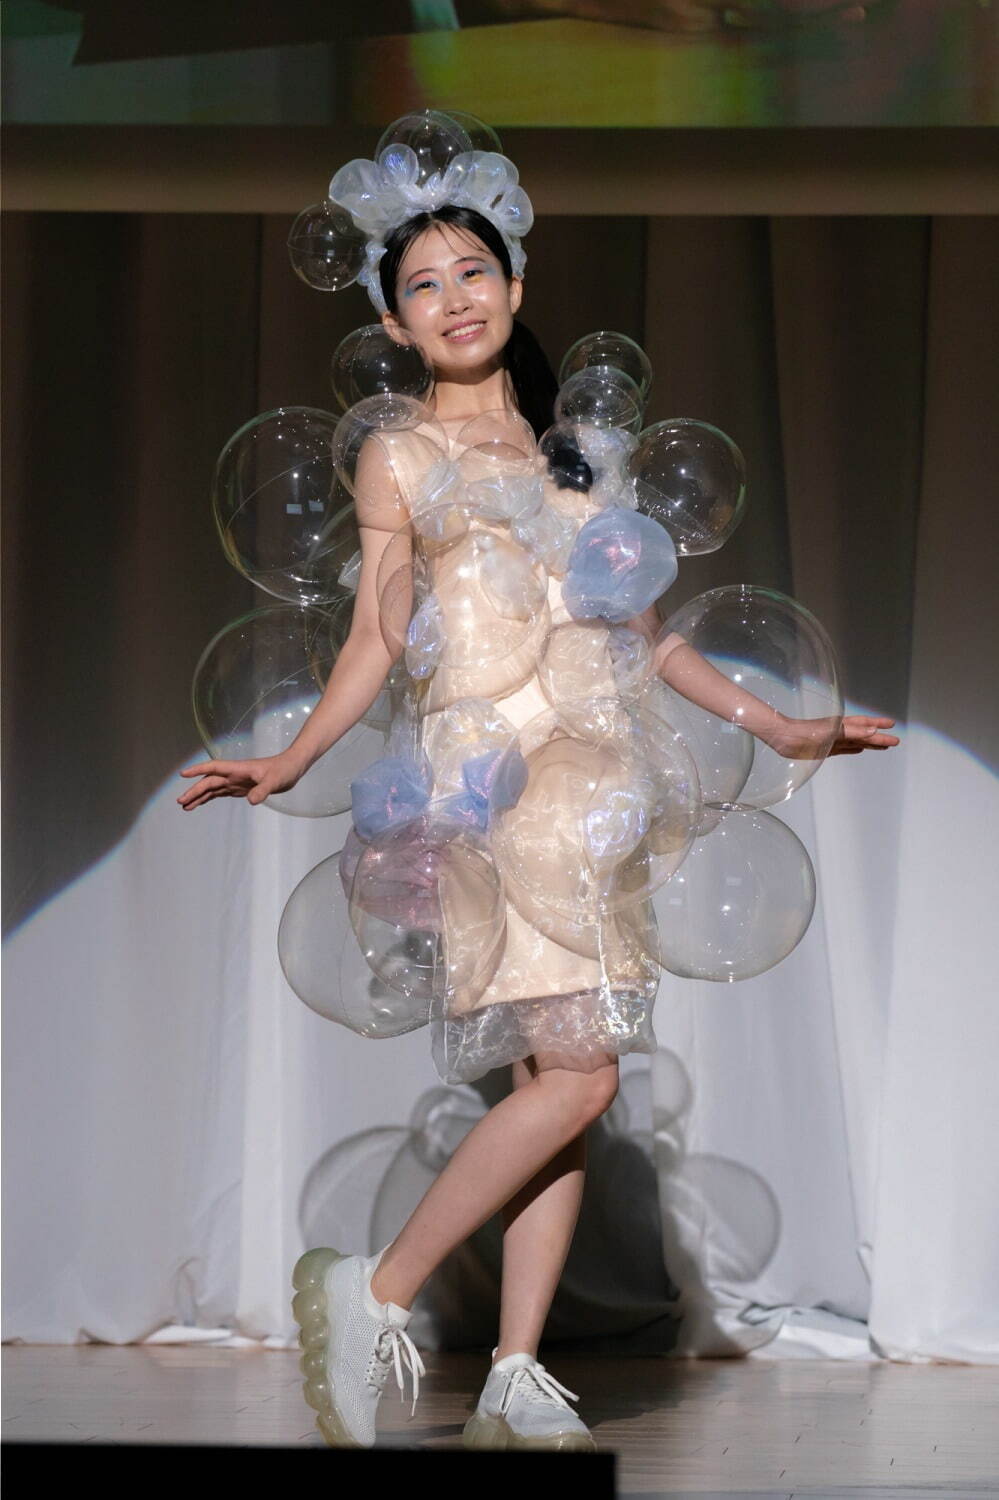 Choi「シャボン玉」
モデル：穂木の香